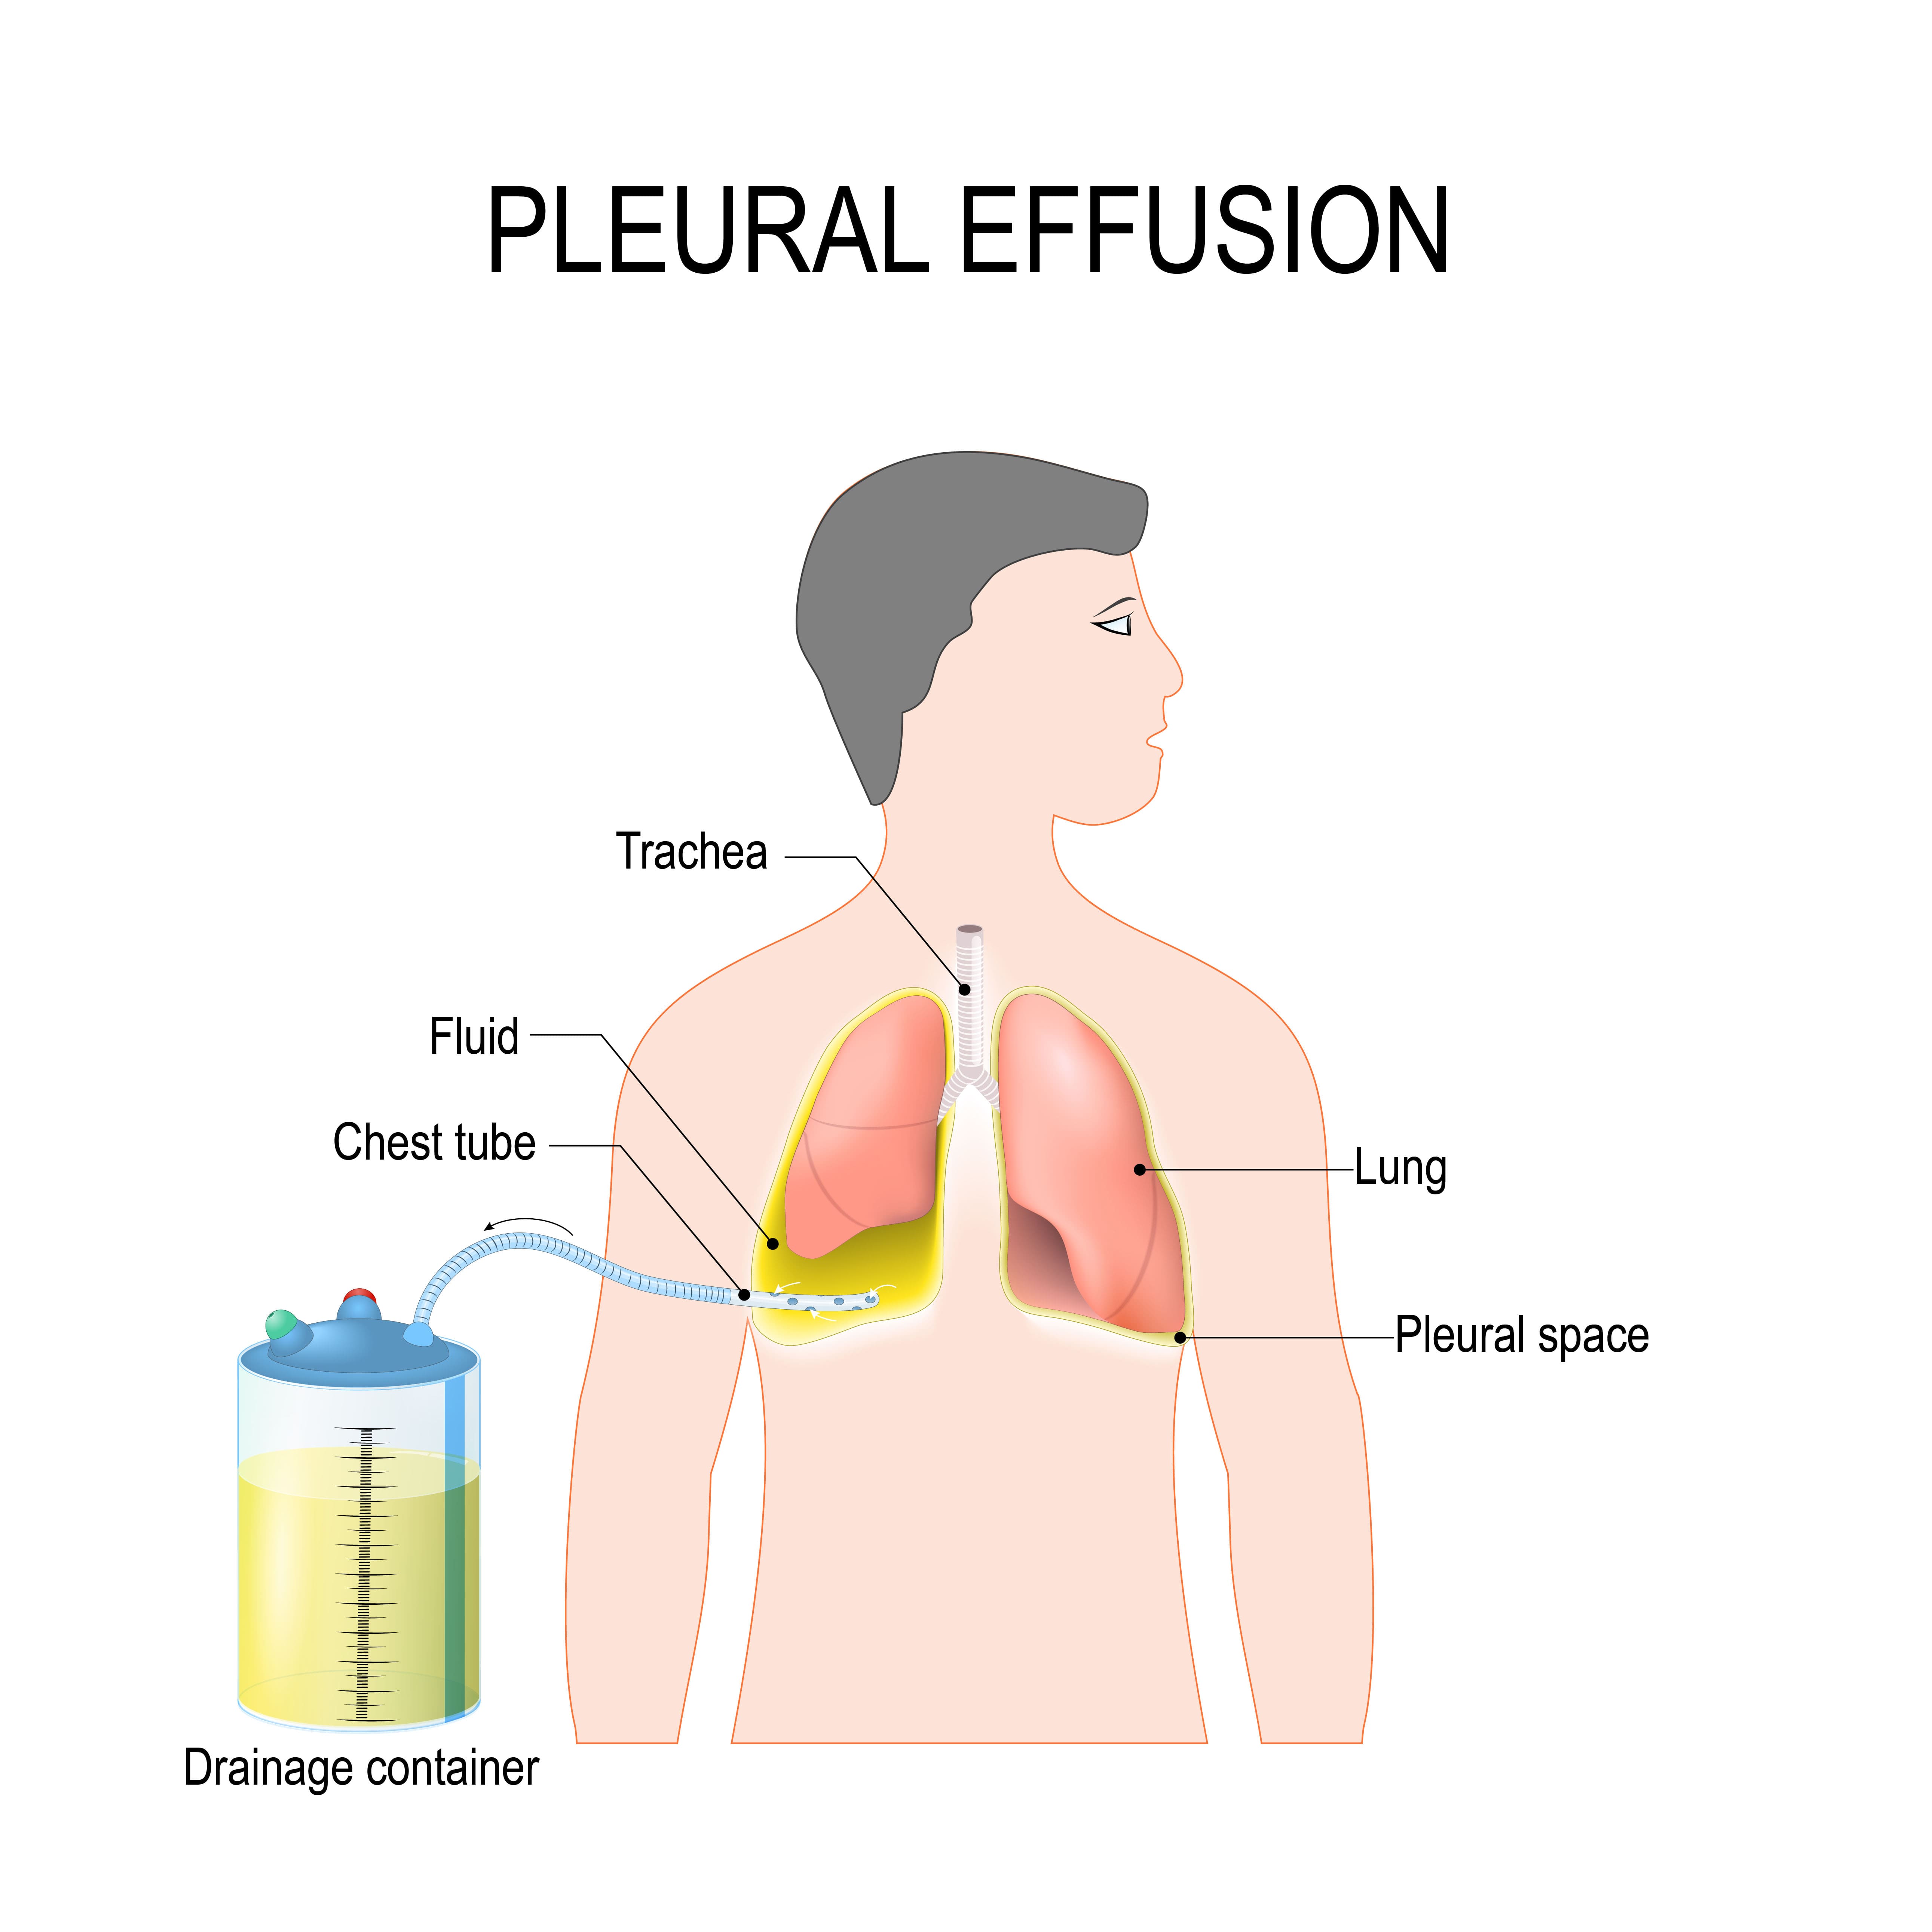 Pleural effusion